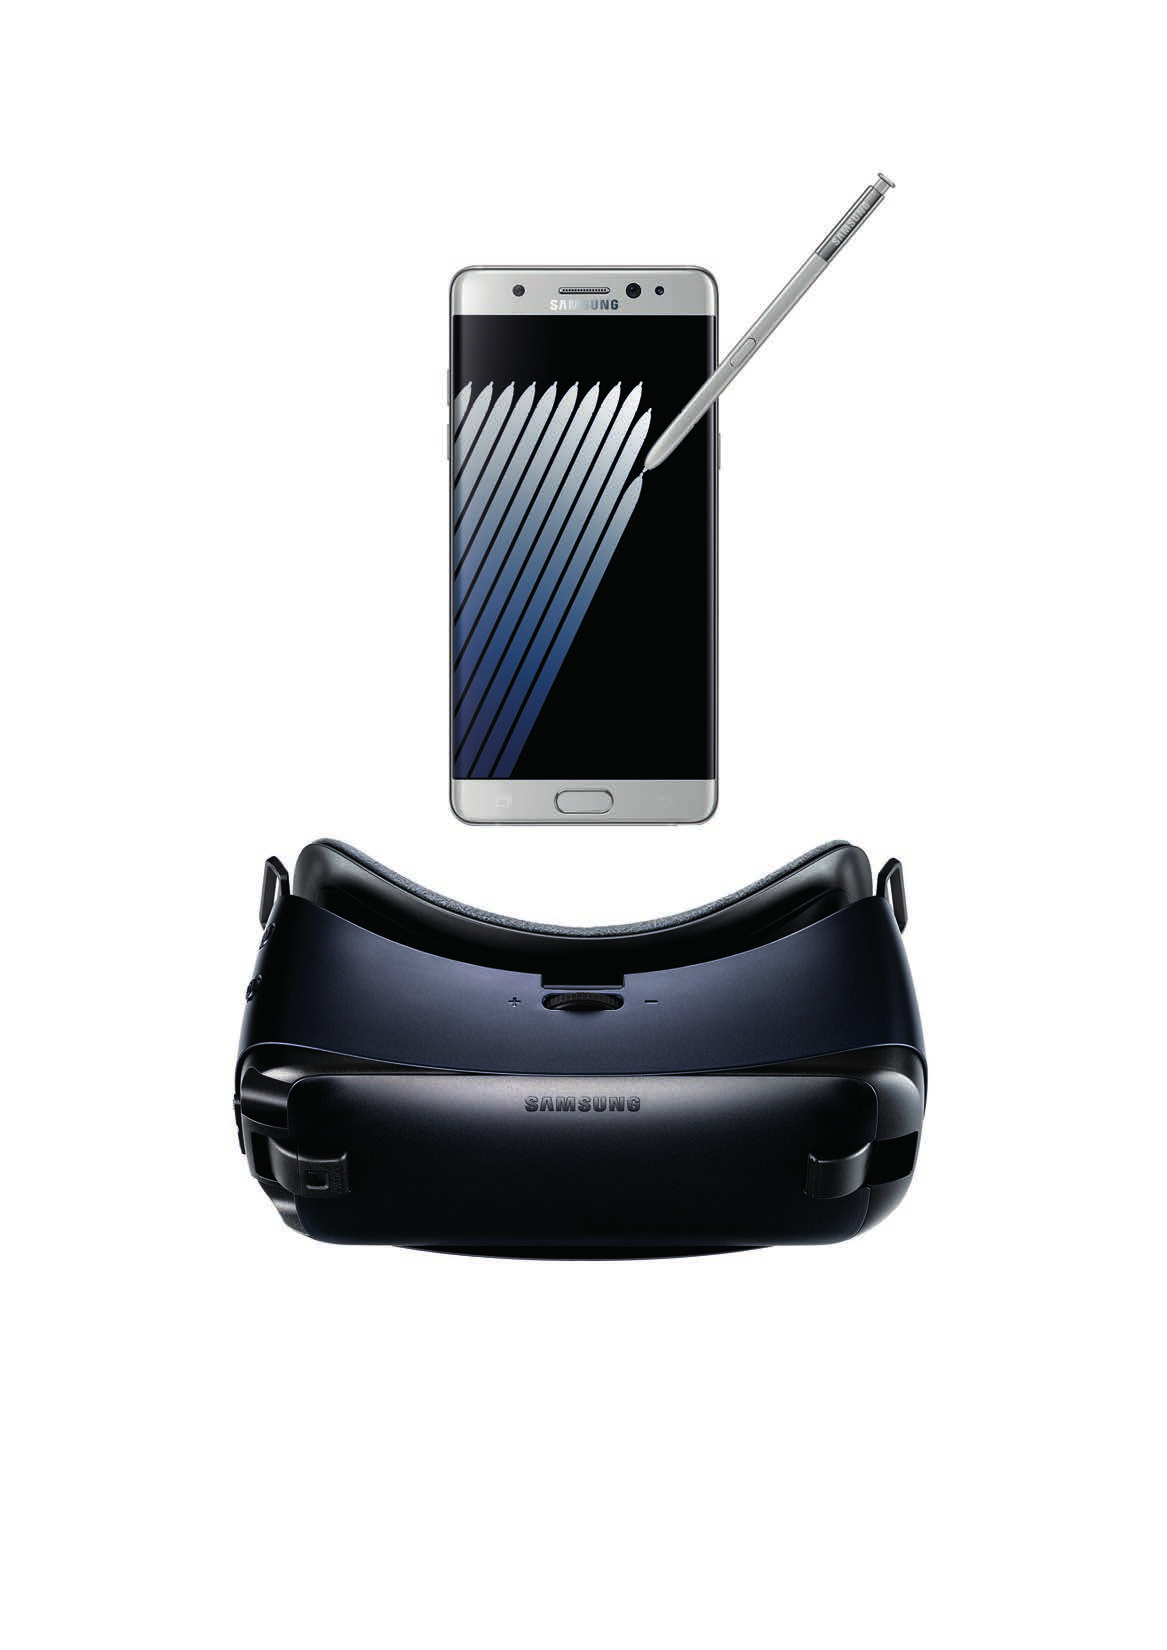 Pre-compra el nuevo Samsung Galaxy Note7 y llévatelo con Gear VR antes